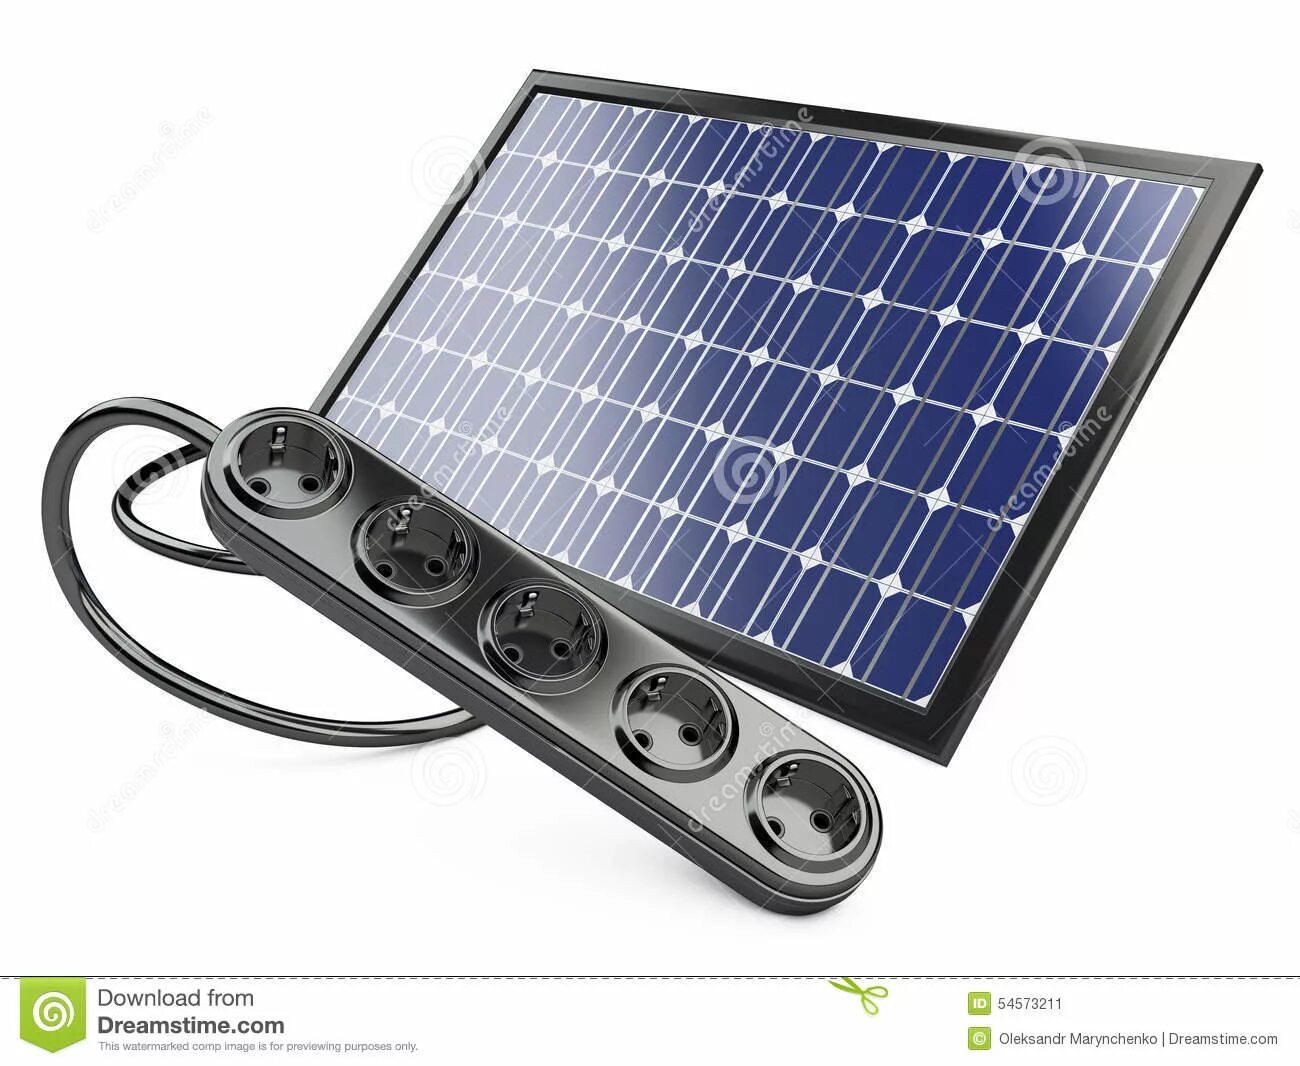 220 солнечные батареи купить. Солнечная панель 220 вольт. Се1с панель Солнечная батарея. Солнечная батарея на 220 вольт. Солнечная батарея 3 вольта.